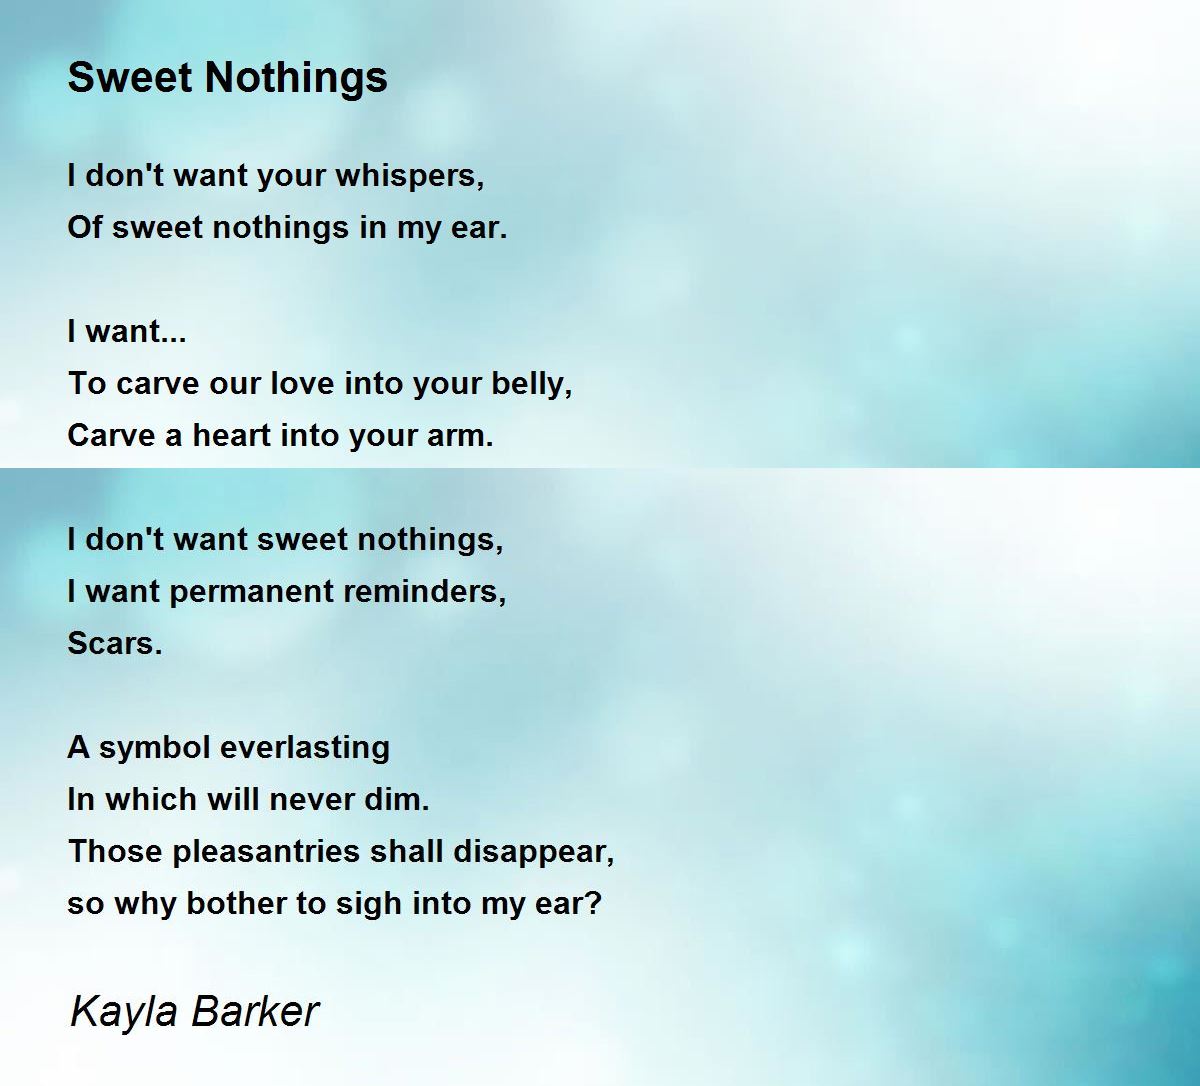 Sweet Nothings - Sweet Nothings Poem by Kayla Barker